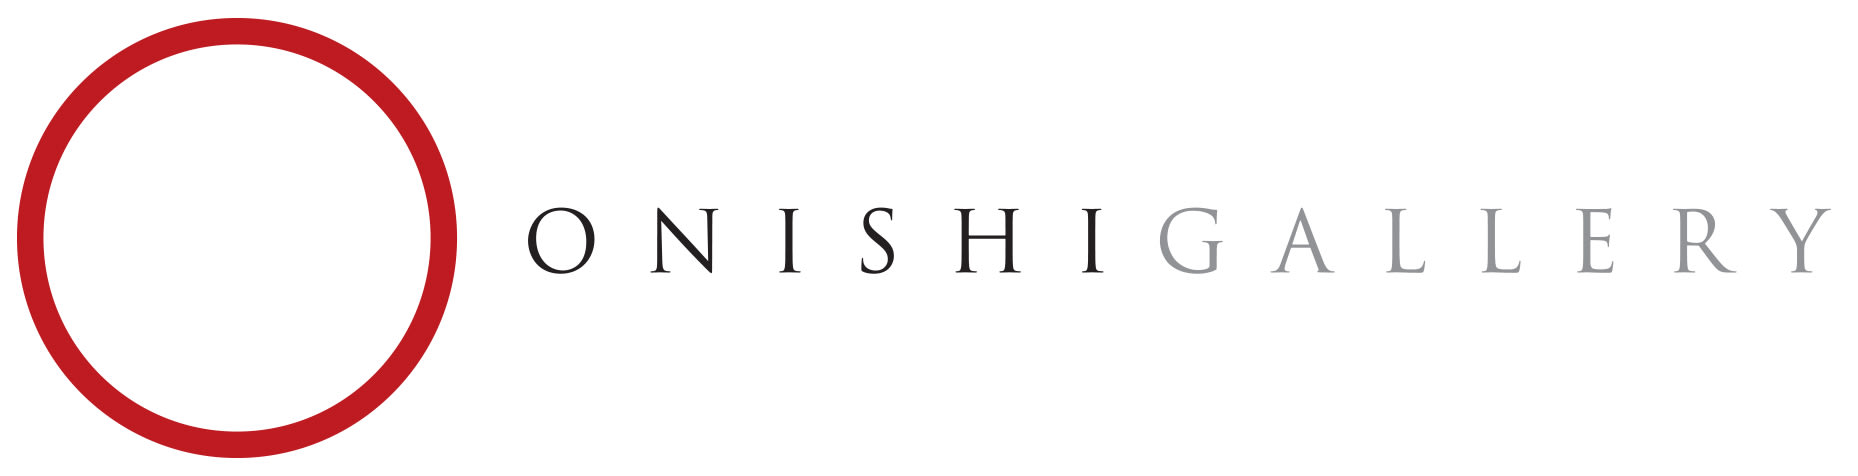 Onishi Gallery company logo